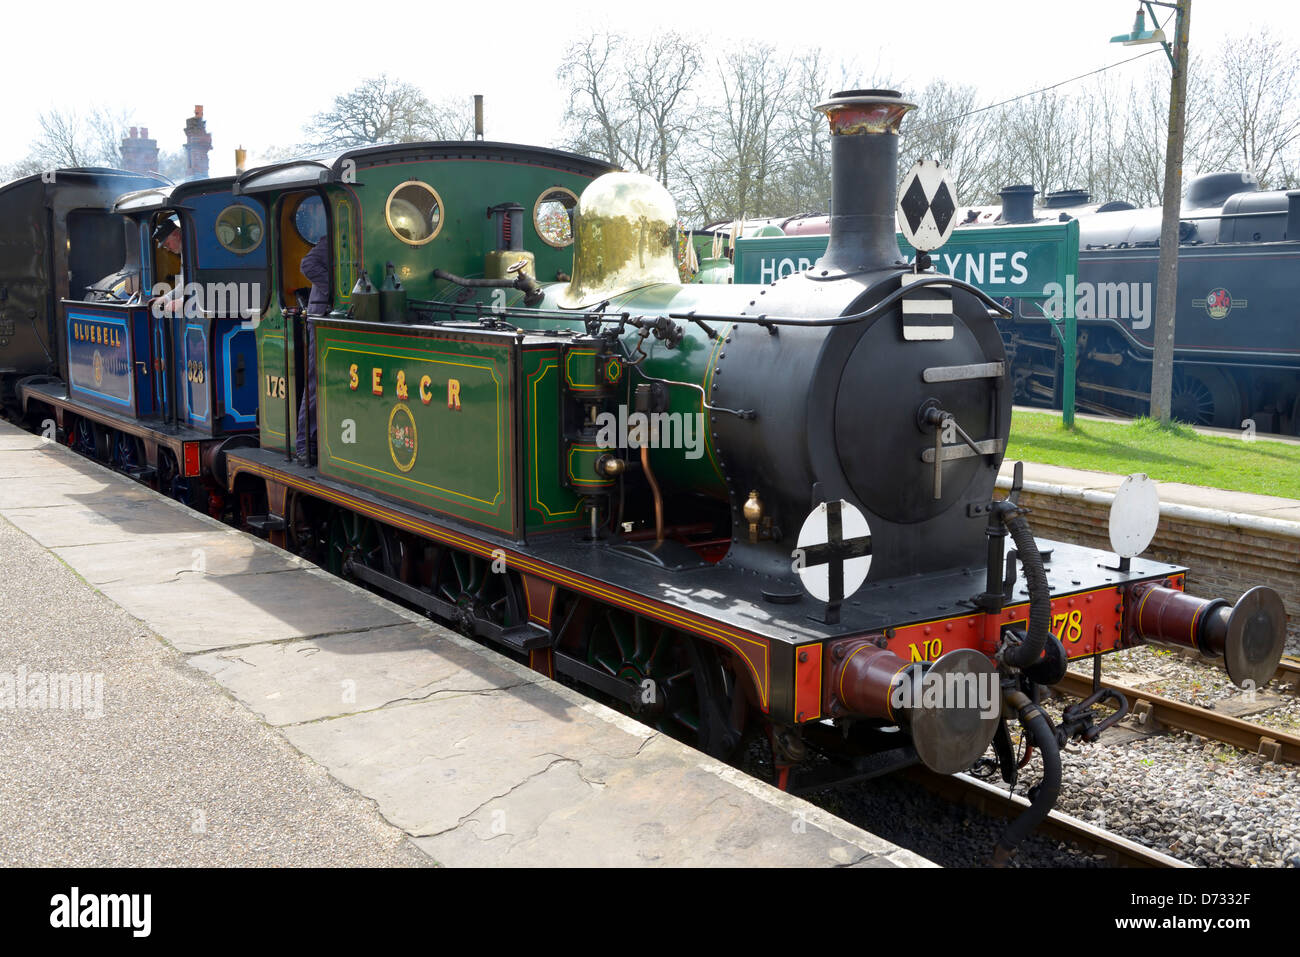 Una linea di ferrovia Bluebell locomotiva Alla Horsted Keynes restaurata stazione edoardiana, West Sussex, Regno Unito Foto Stock